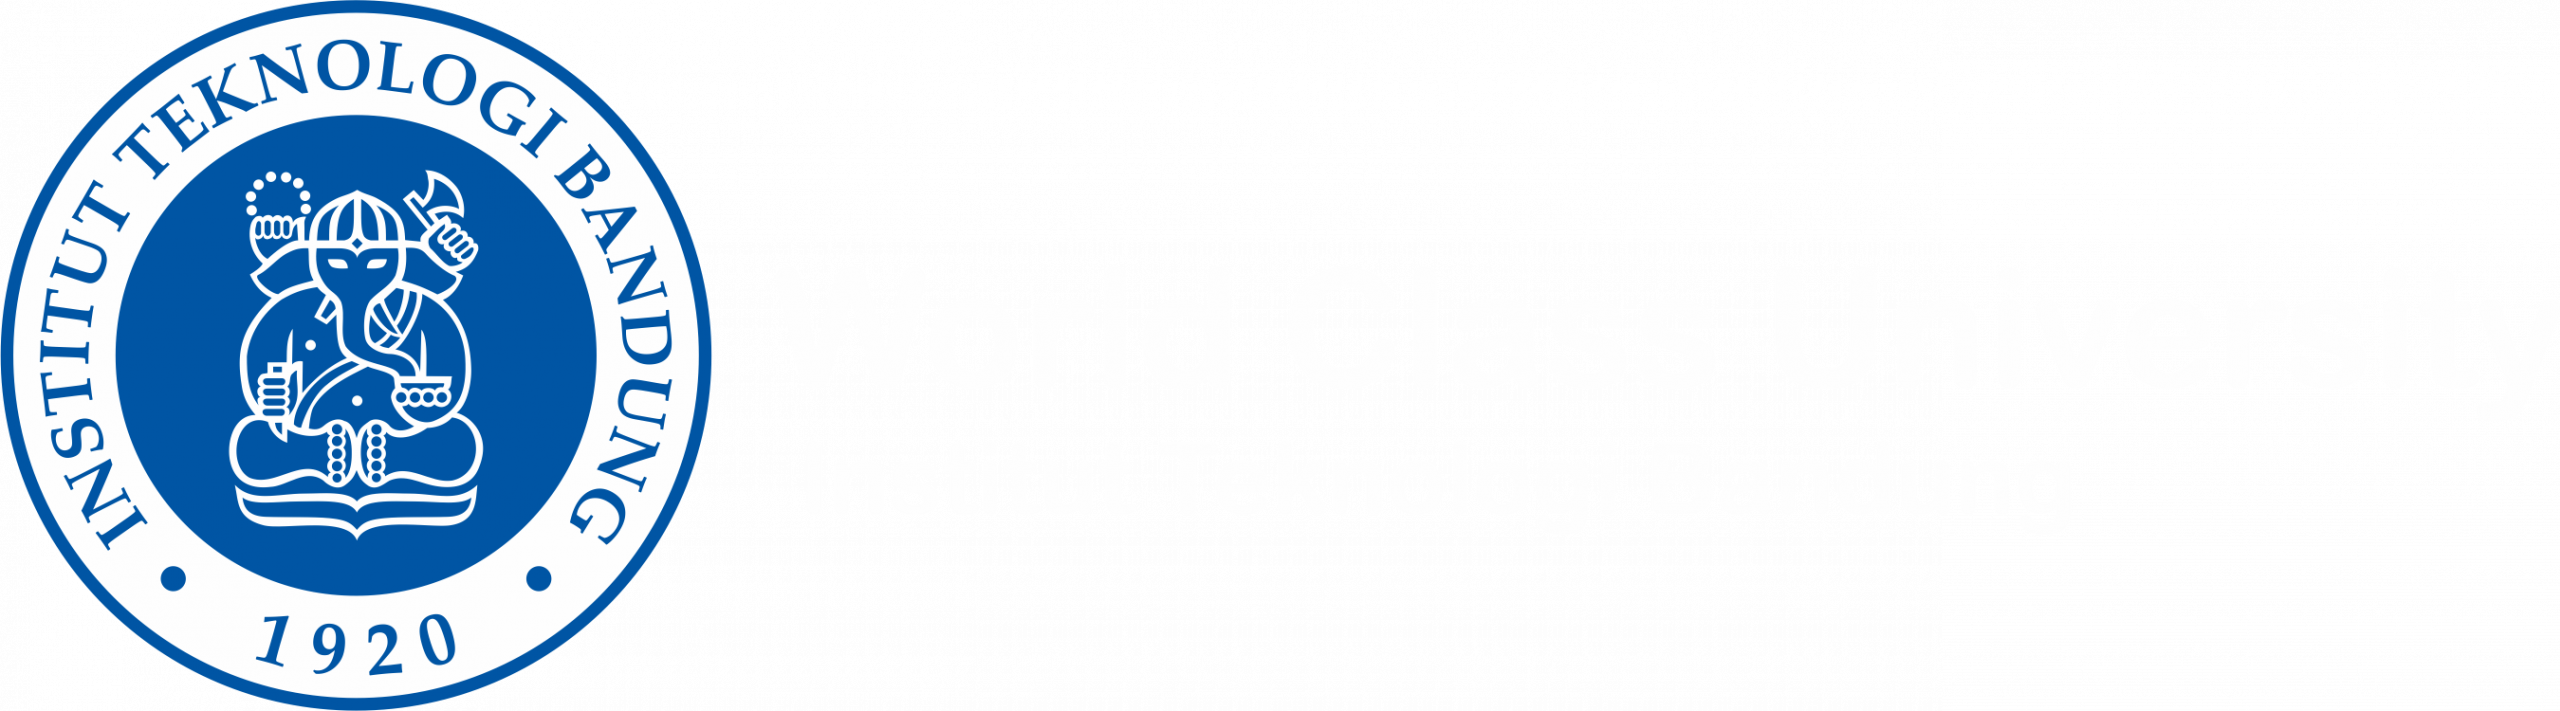 World Class University – ITB - World Class University – ITB